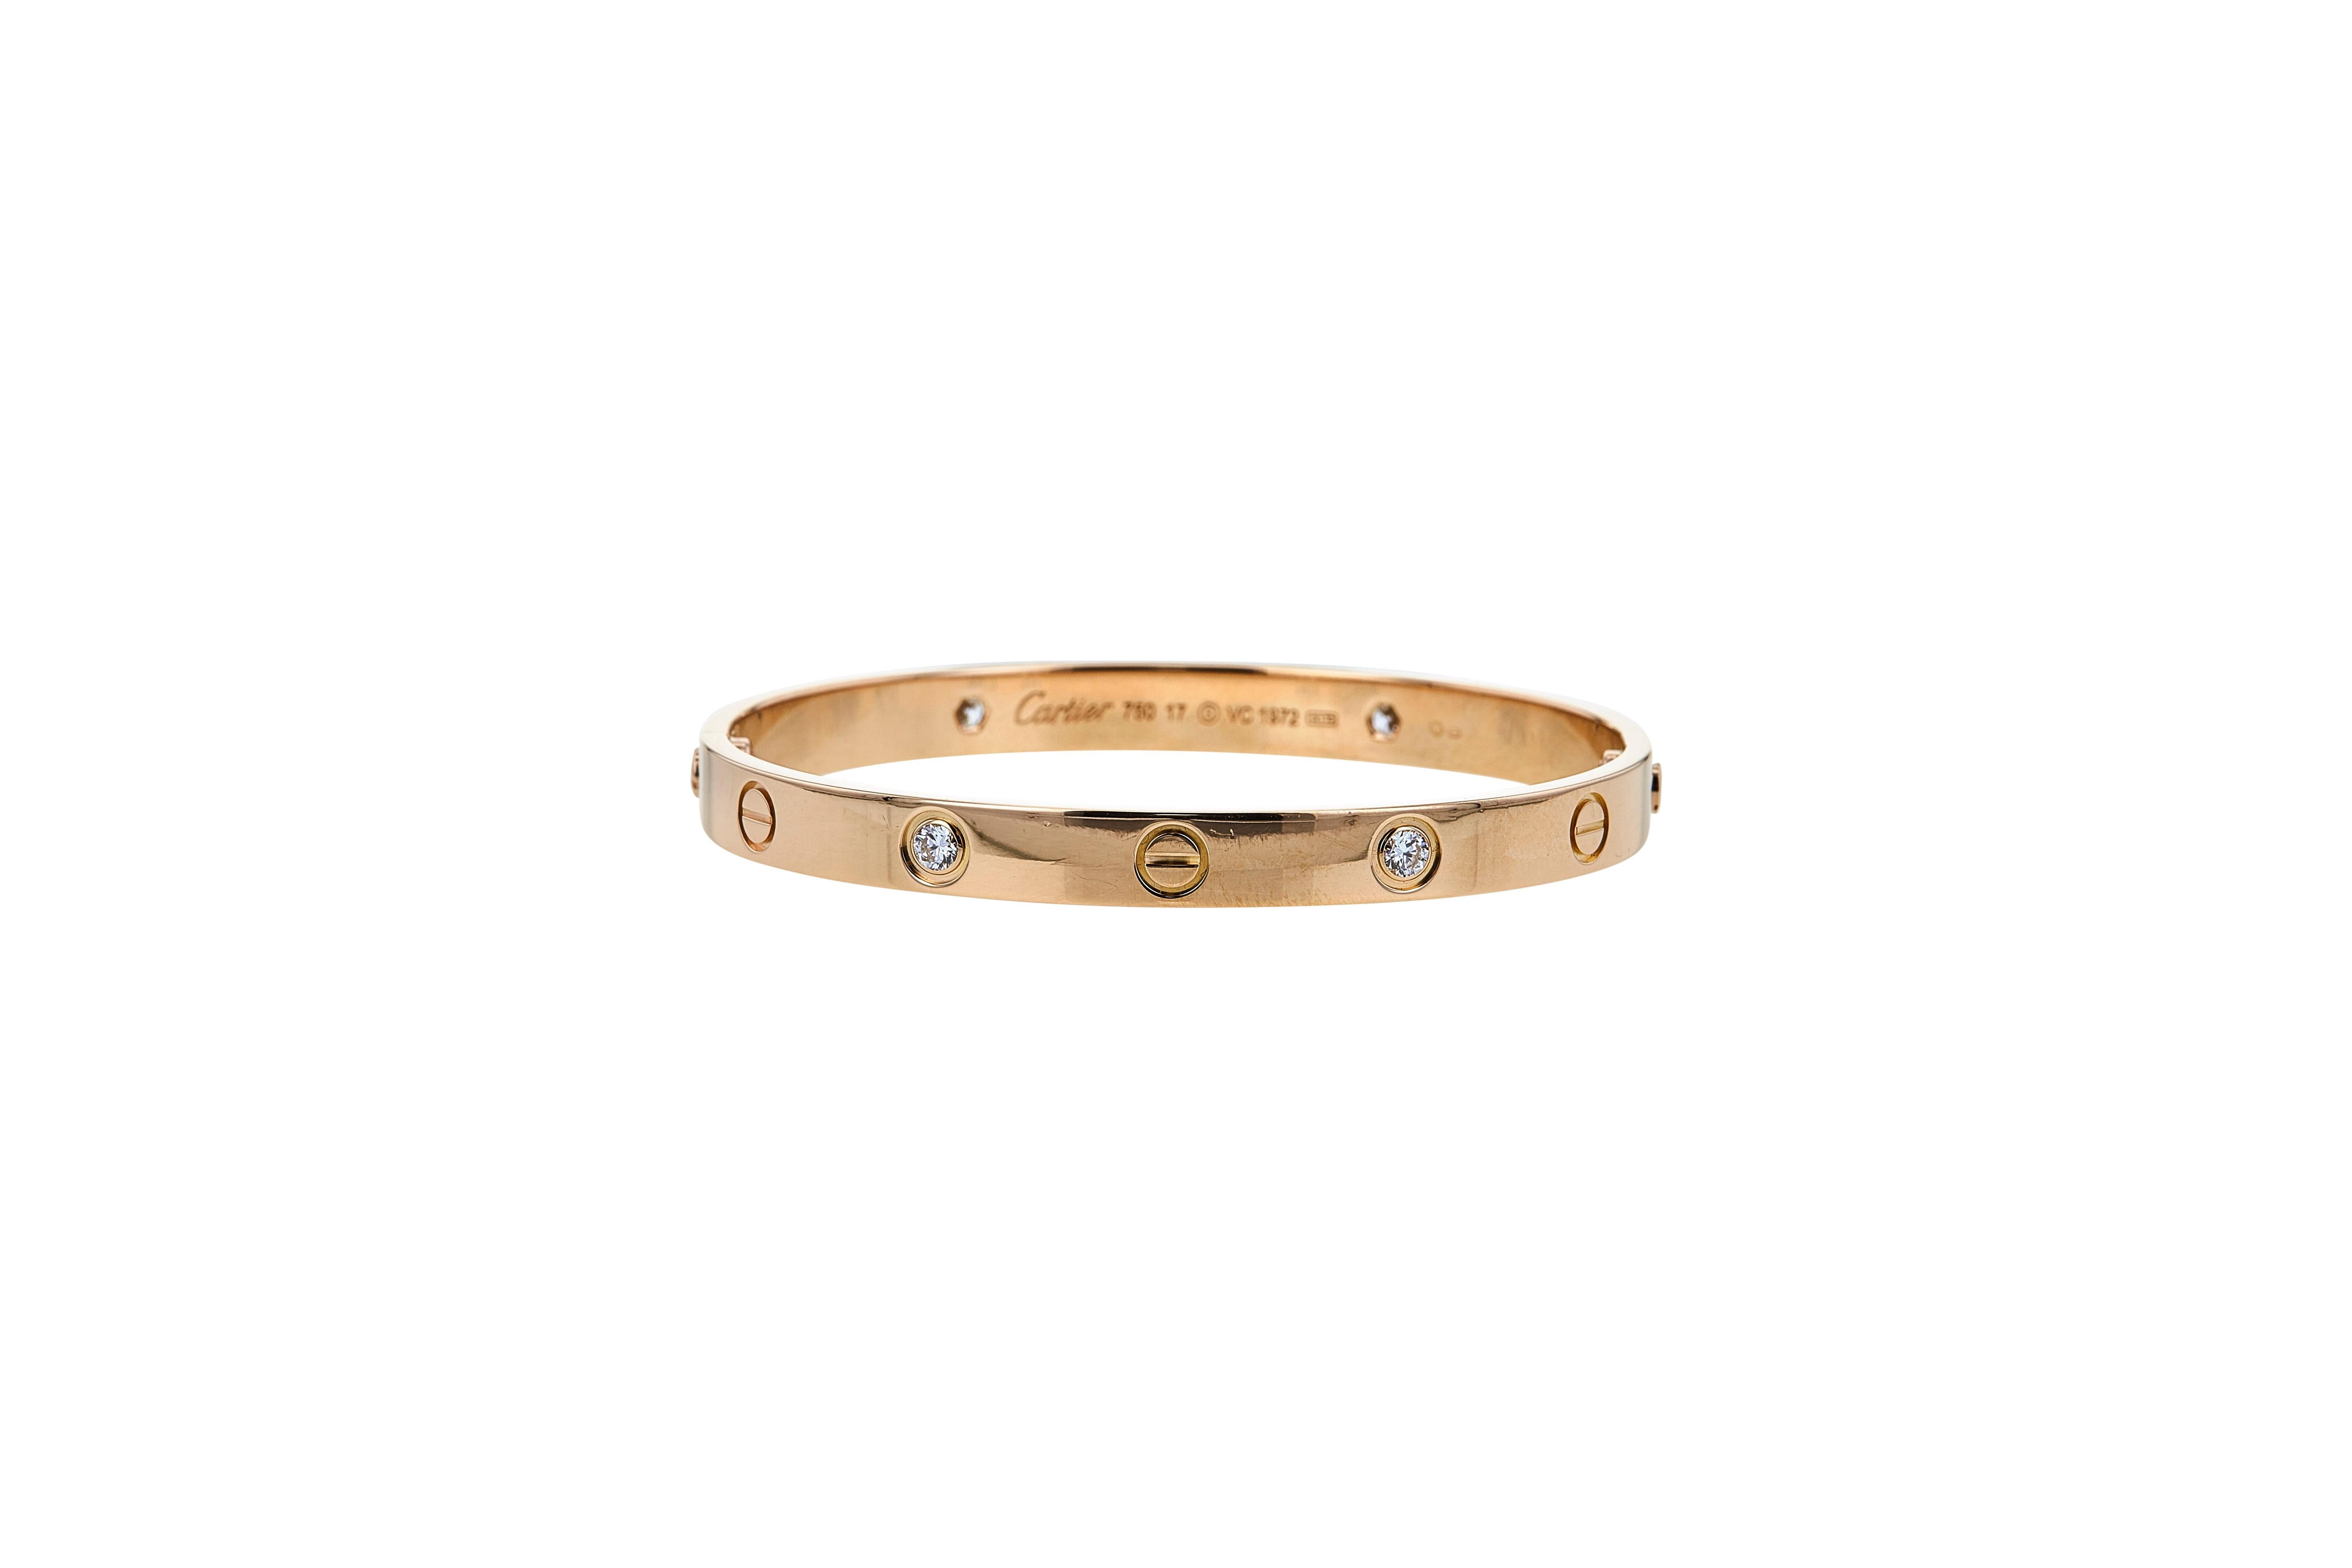 Authentique bracelet 'Love' de Cartier en or rose 18 carats, serti de quatre diamants ronds de taille brillant d'un poids total estimé à 0,42 carats. Taille 17. Signée Cartier, 750, avec numéro de série et poinçons. Le bracelet est présenté avec les